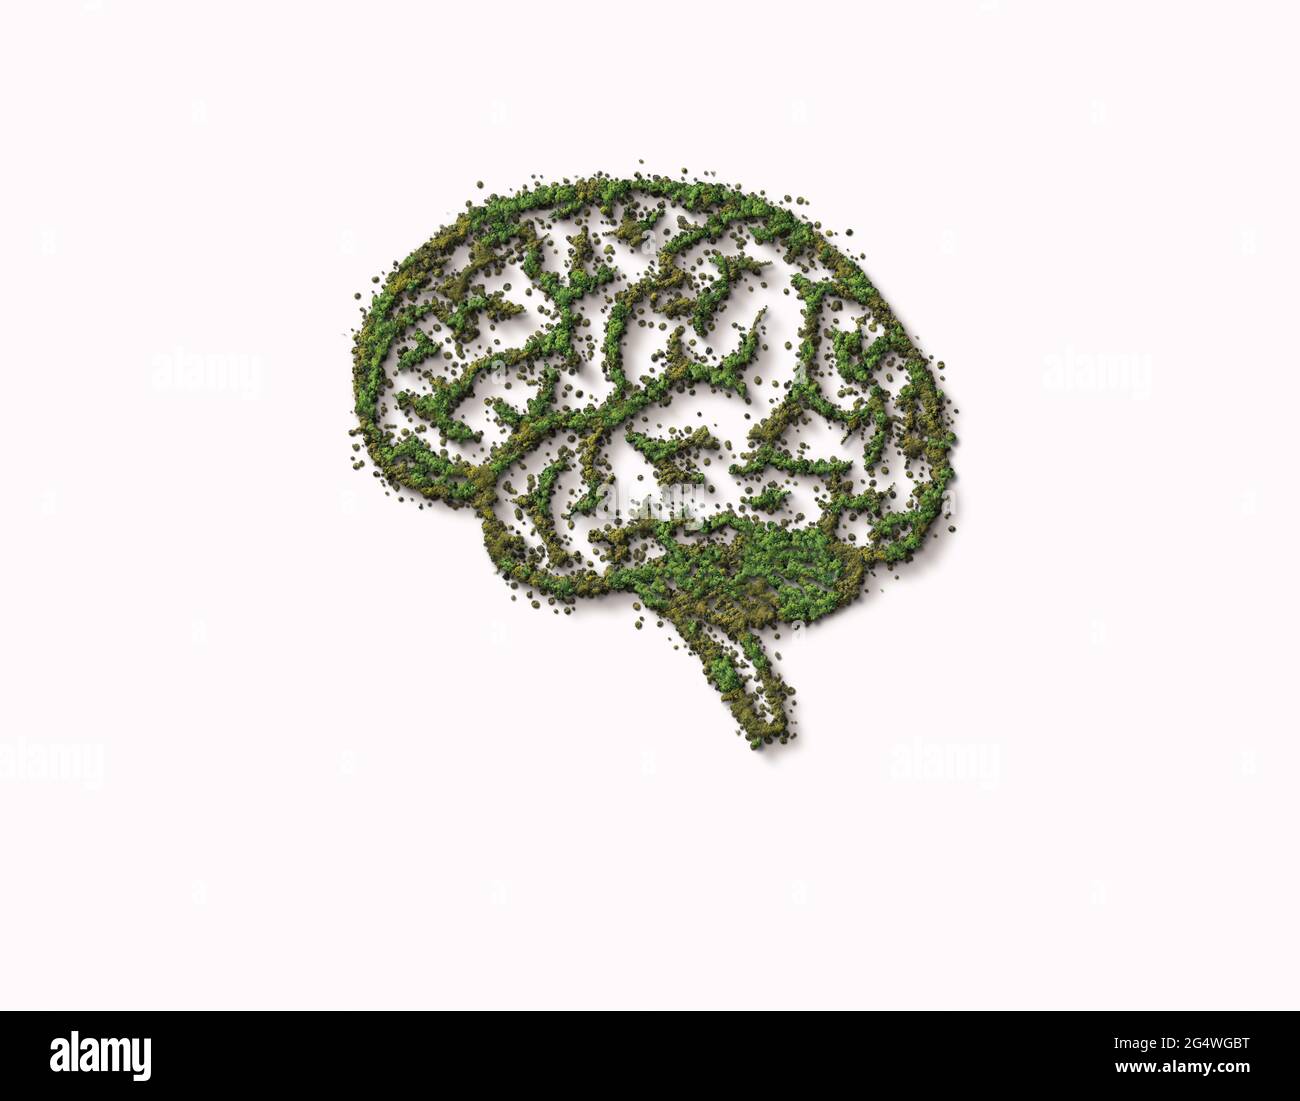 3D le cerveau humain est couvert de forêt verte. Pensez au concept vert. Cerveau d'intelligence sauvage, naturel ou imparfait isolé sur fond blanc. Banque D'Images